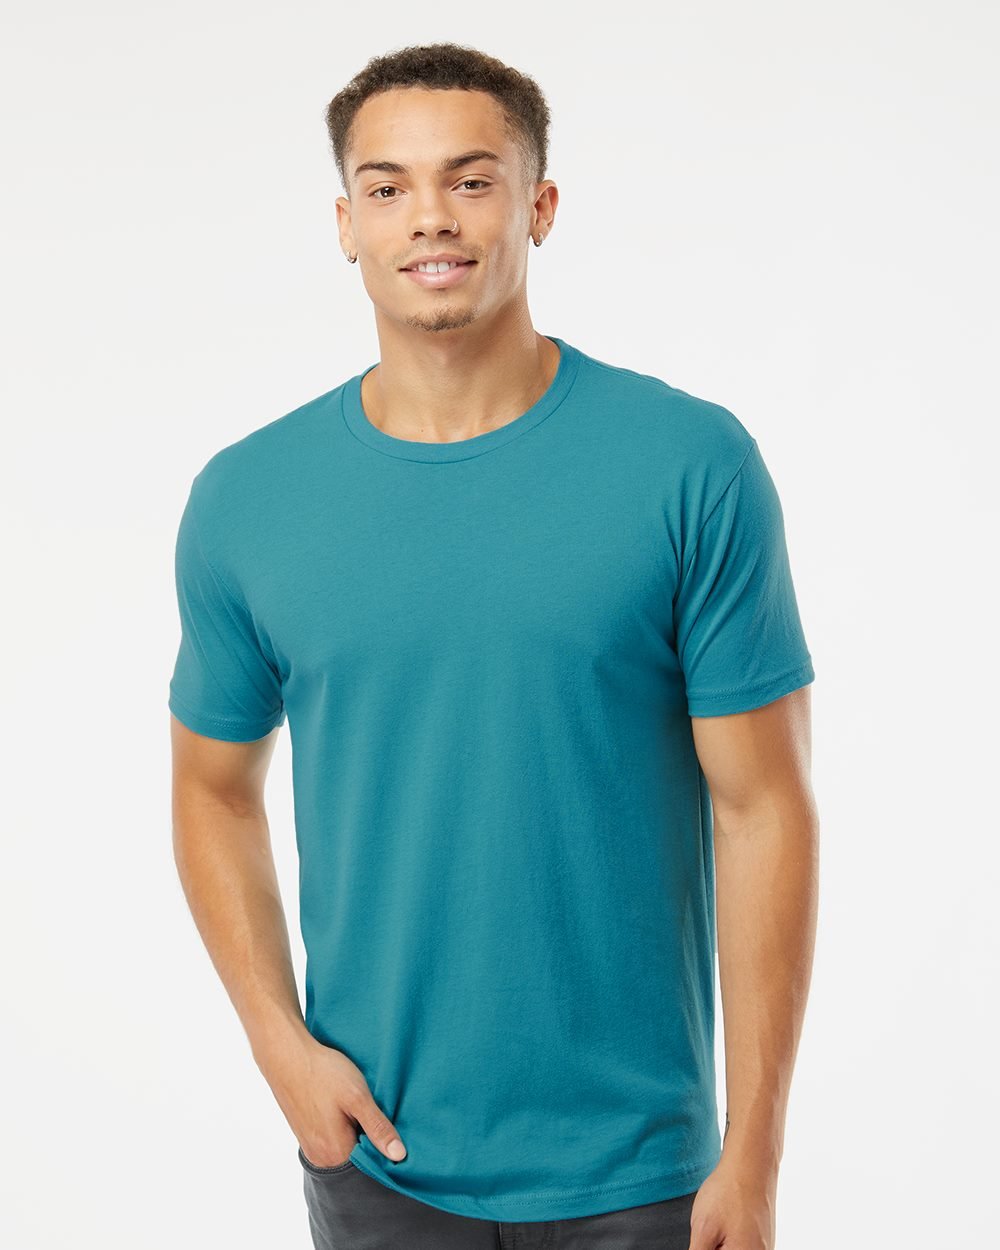 Next Level 3600 Unisex Cotton T Shirt - Light Blue - L